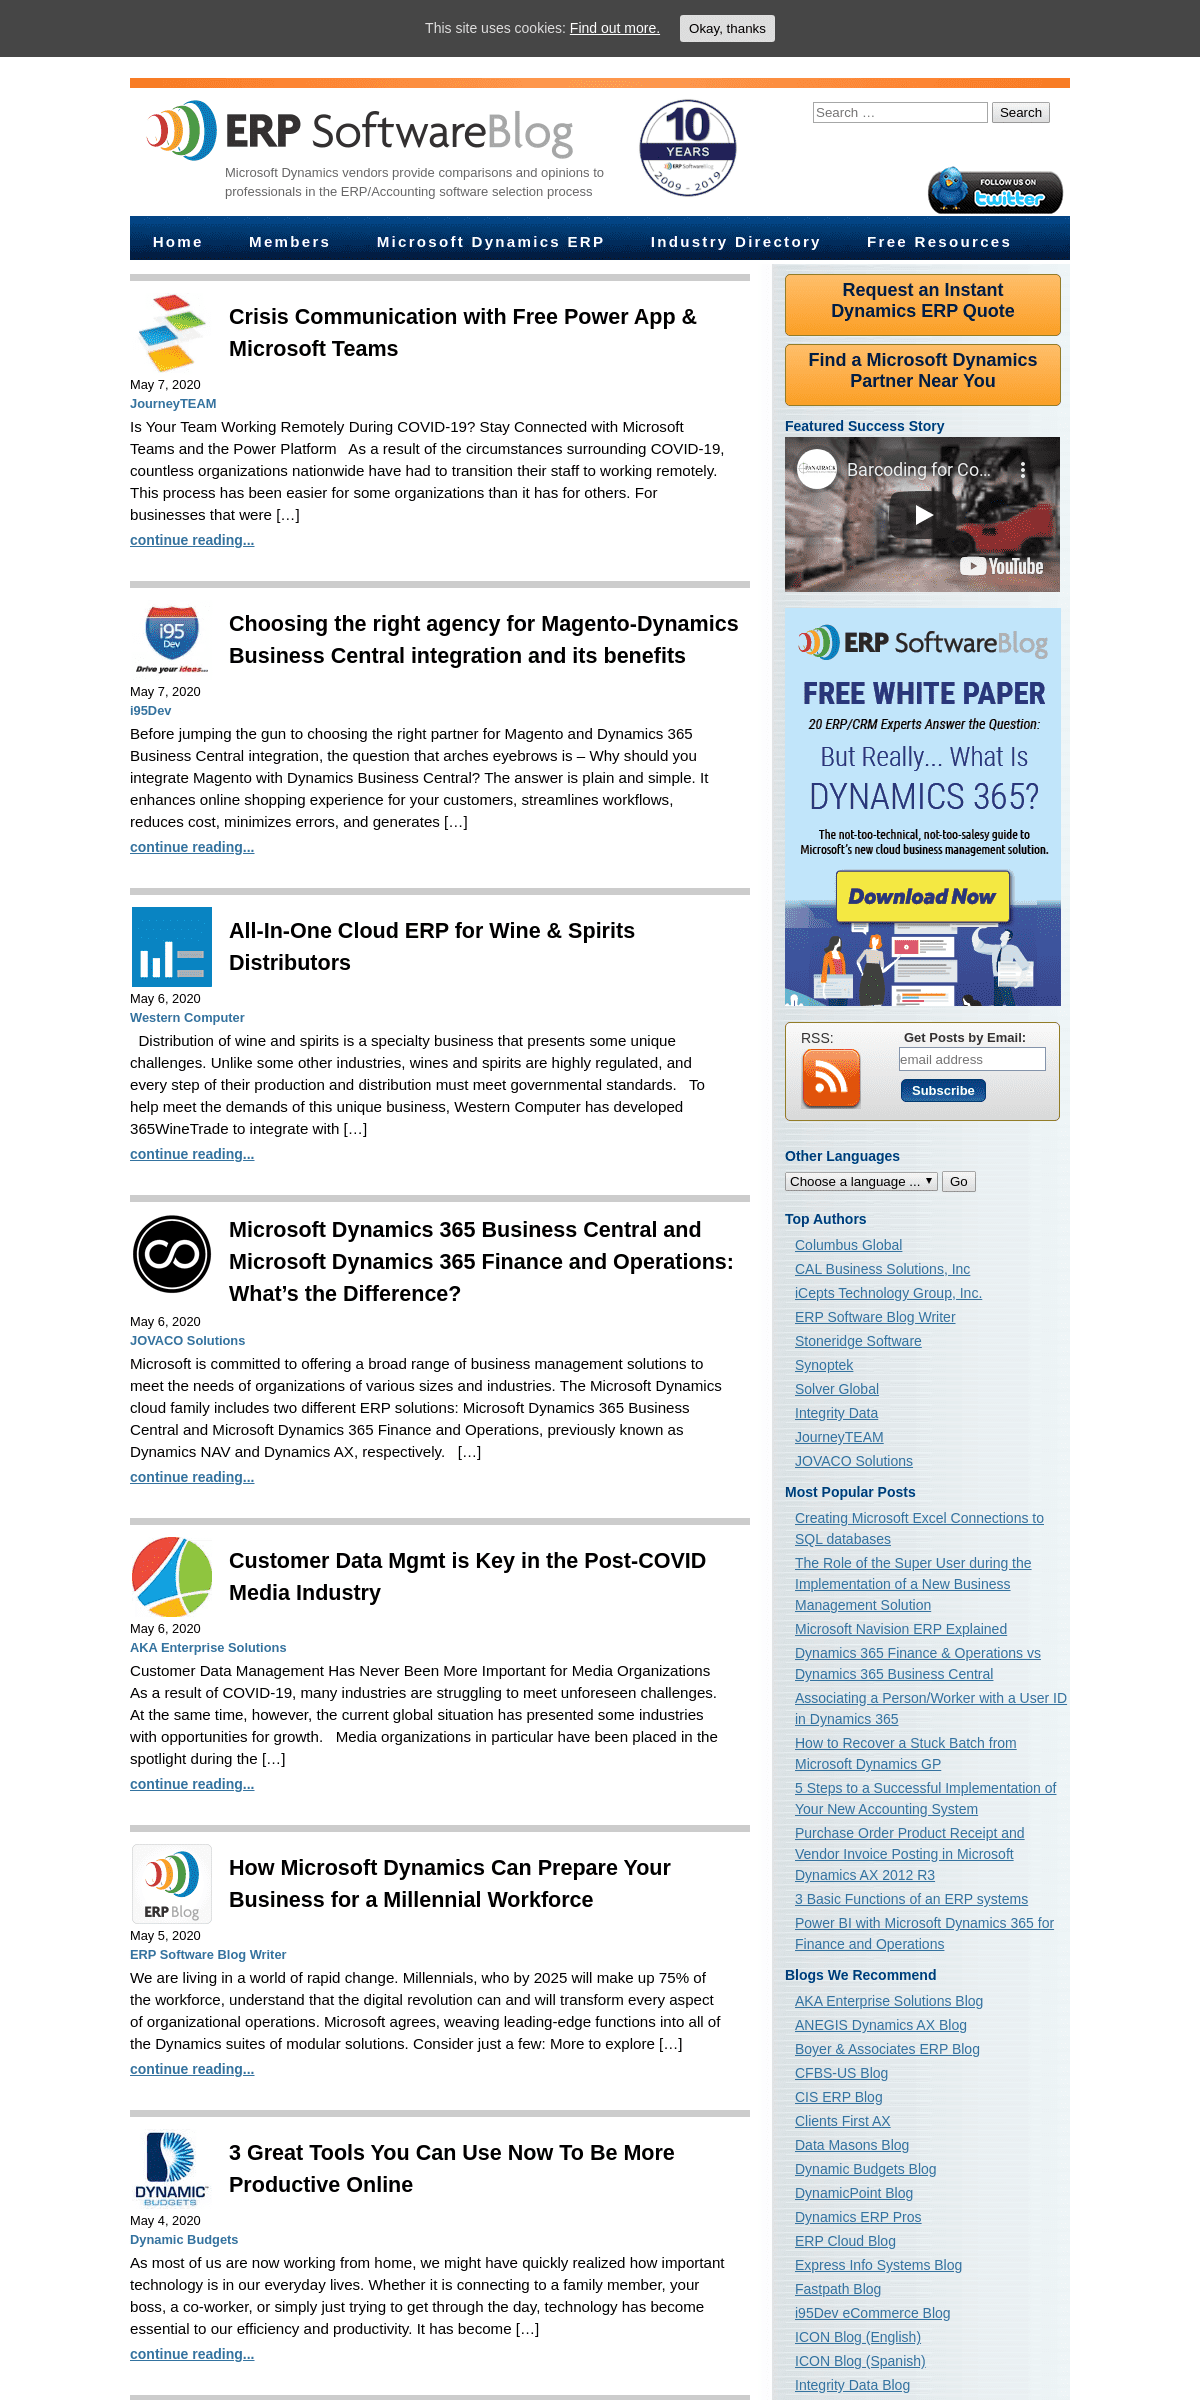 A complete backup of erpsoftwareblog.com